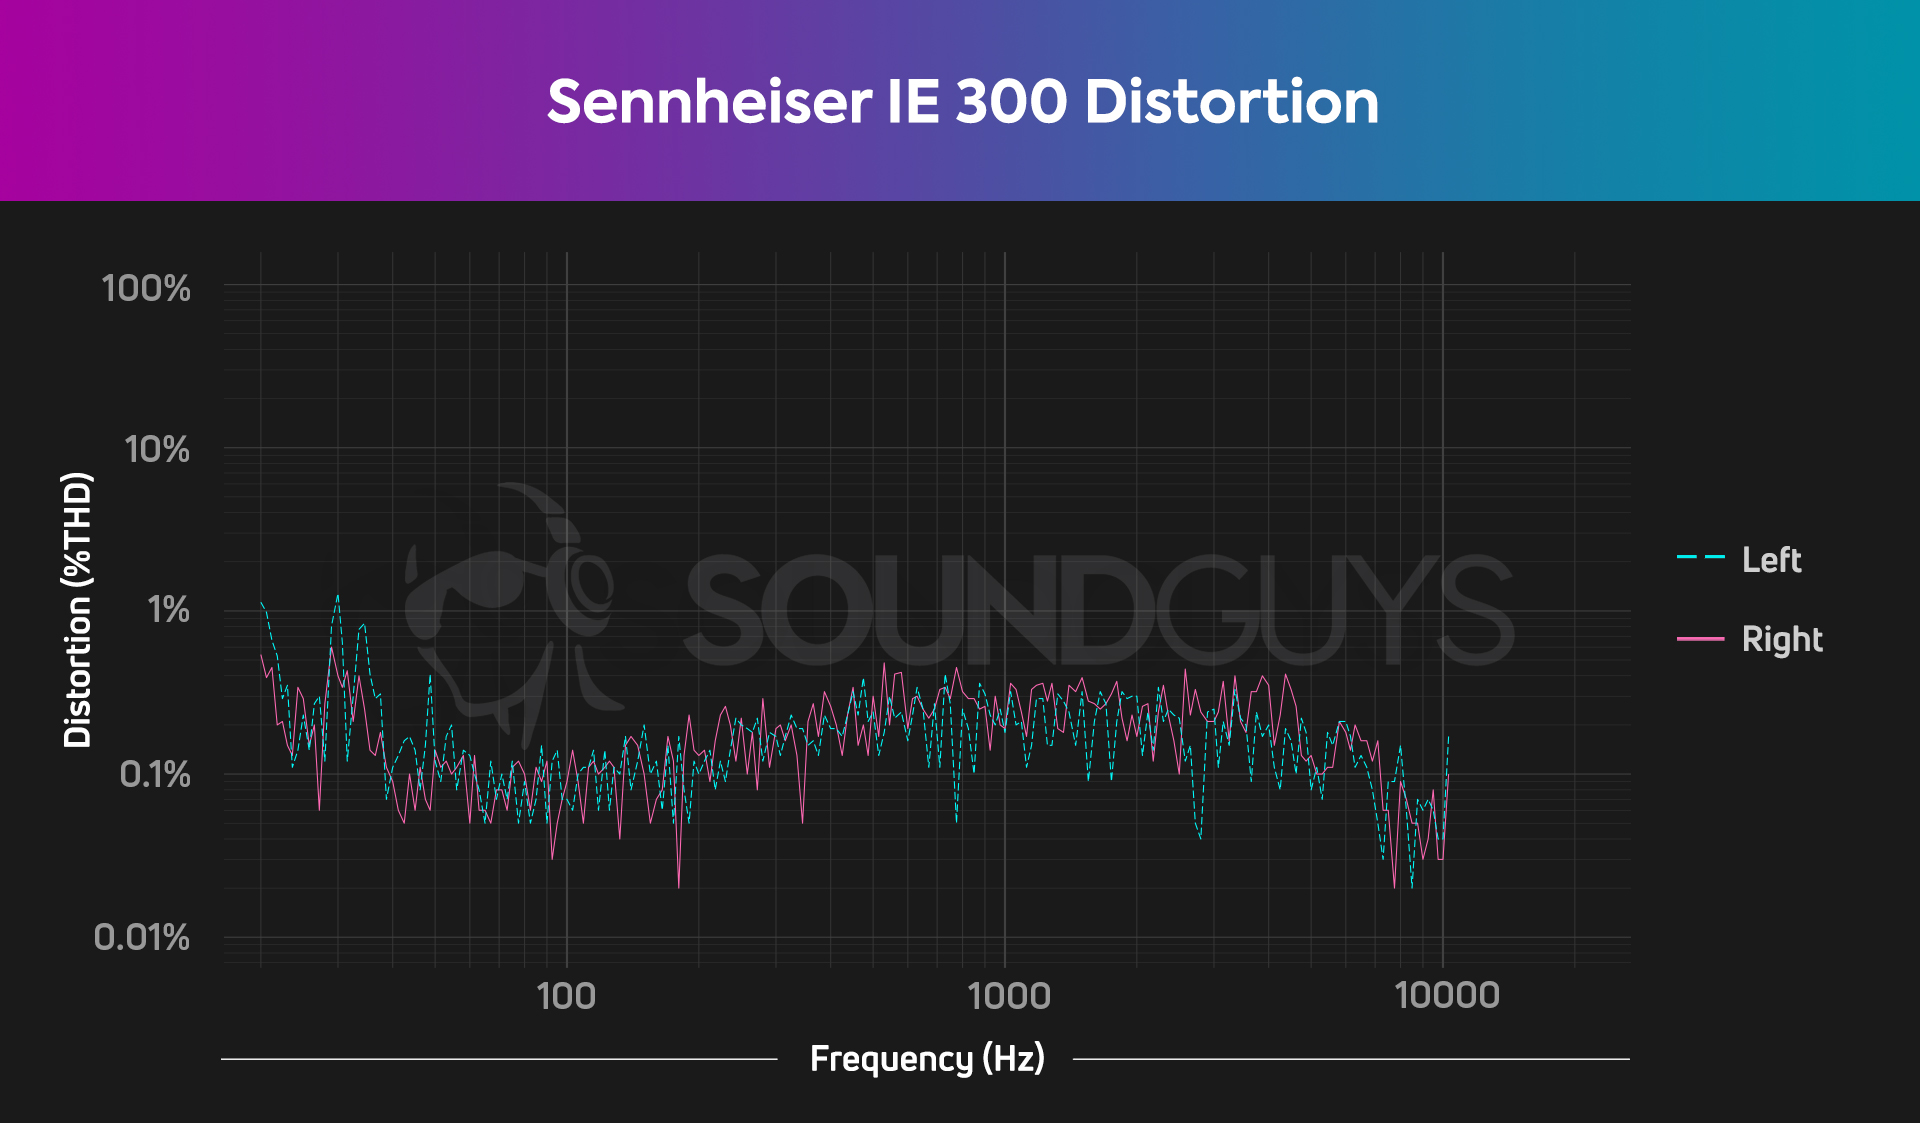 Total Harmonic Distortion chart for the Sennheiser IE 300